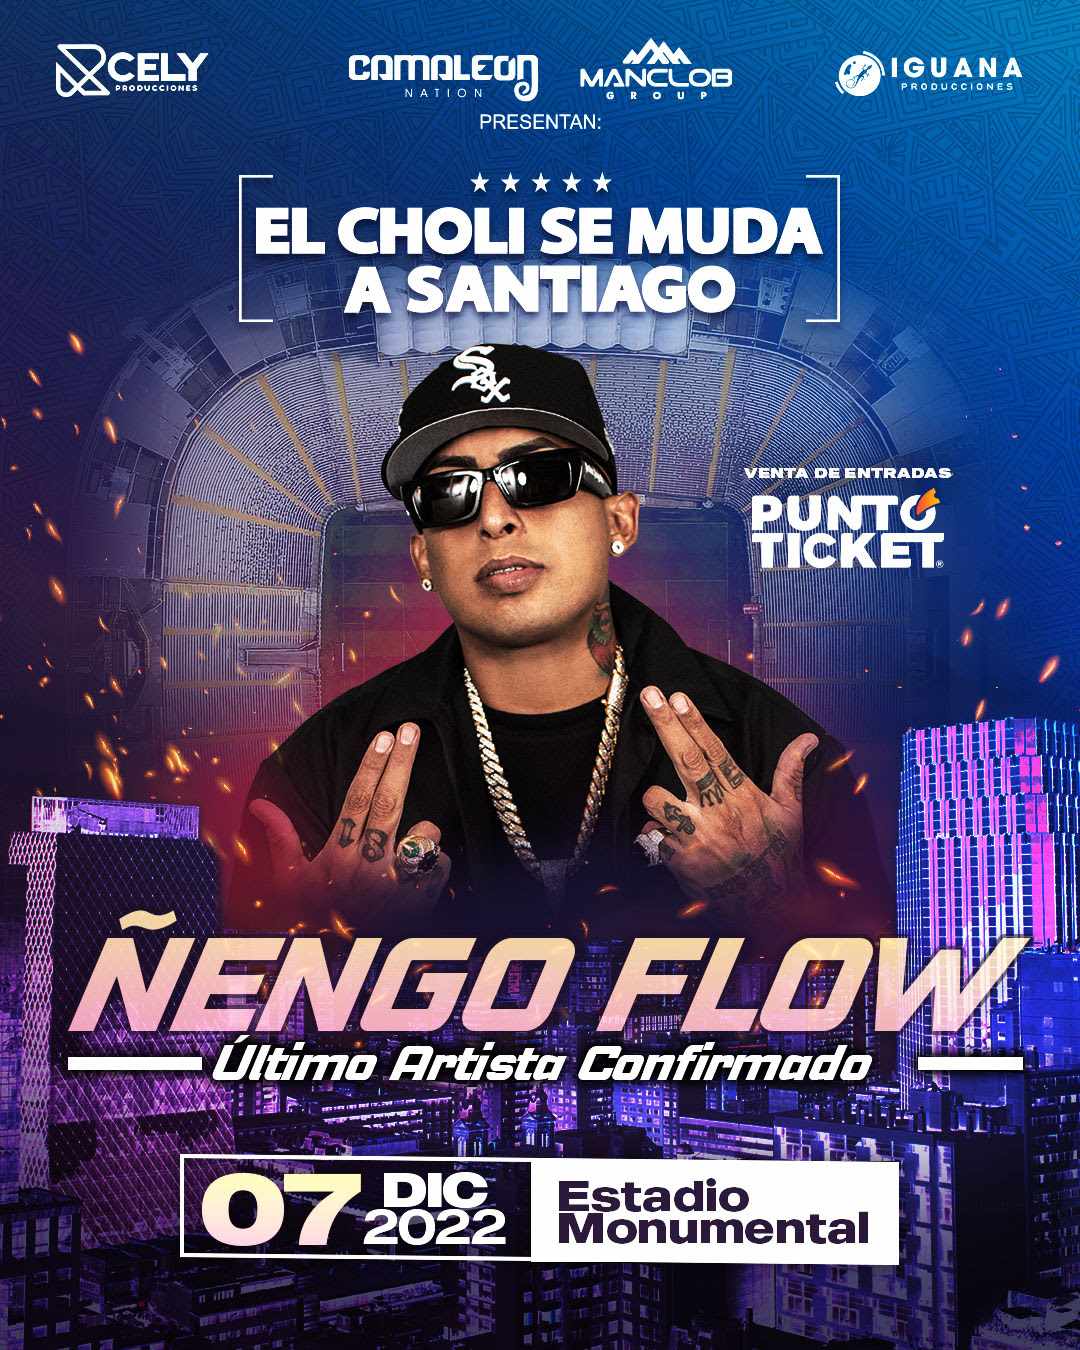 Ñengo Flow En El Choli Se Muda A Santiago